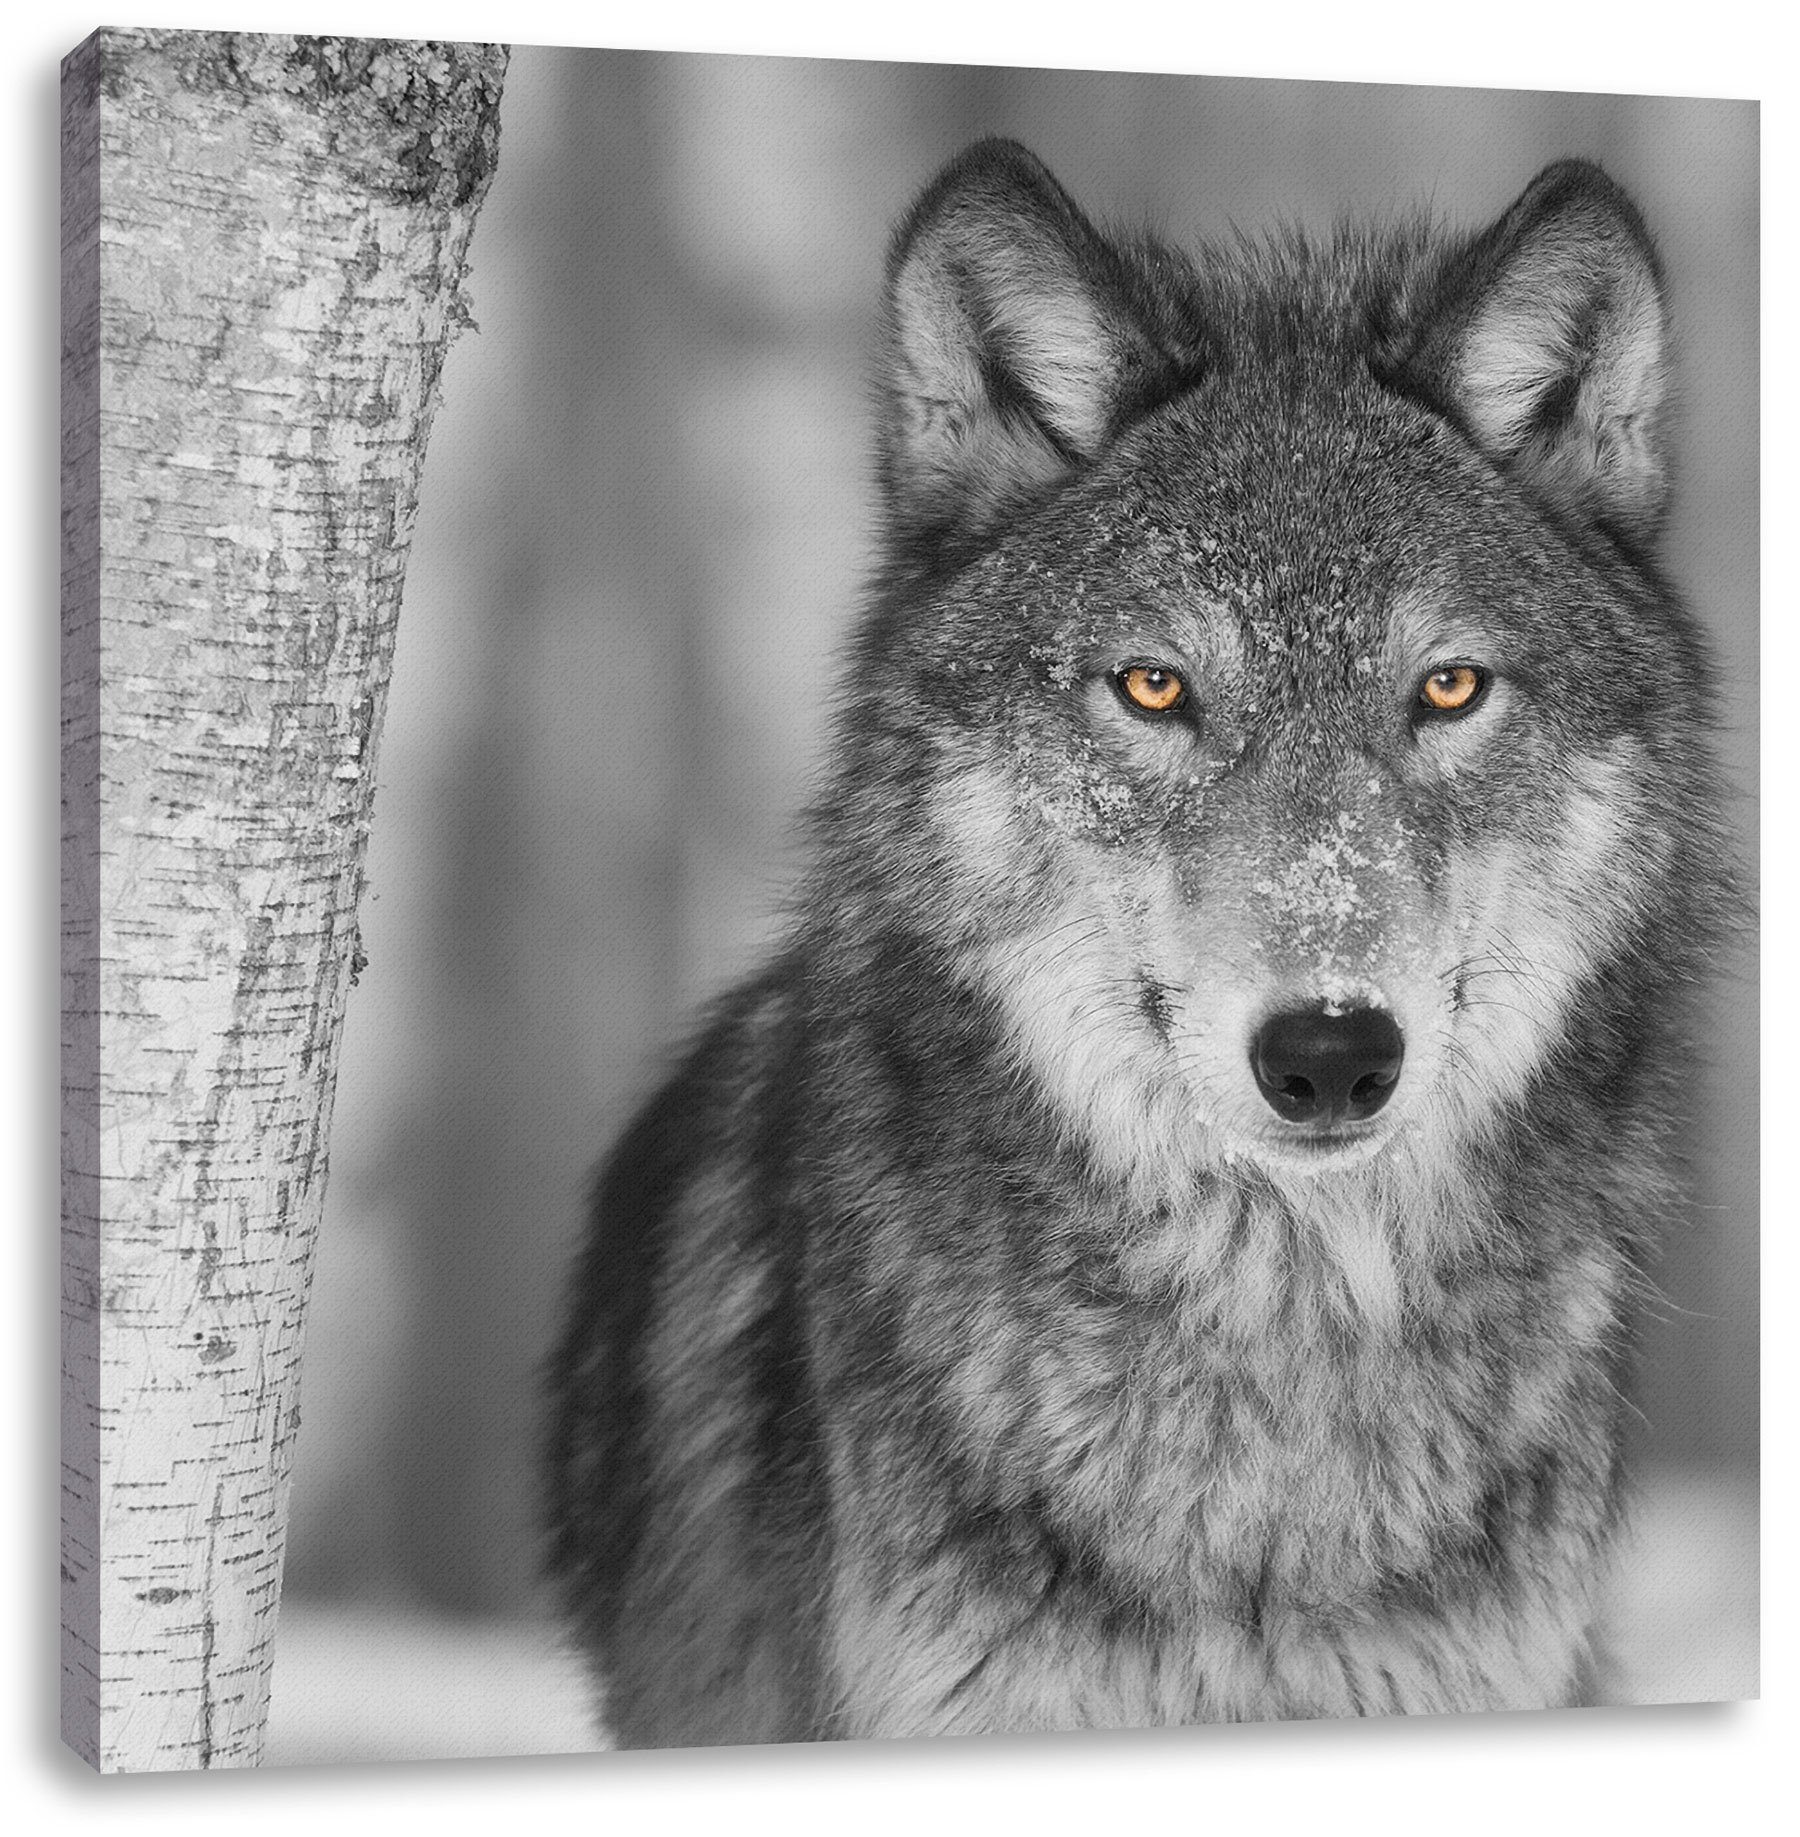 wachsamer wachsamer inkl. Leinwandbild (1 Pixxprint Leinwandbild St), fertig Wolf Zackenaufhänger bespannt, wunderschöner Wolf, wunderschöner